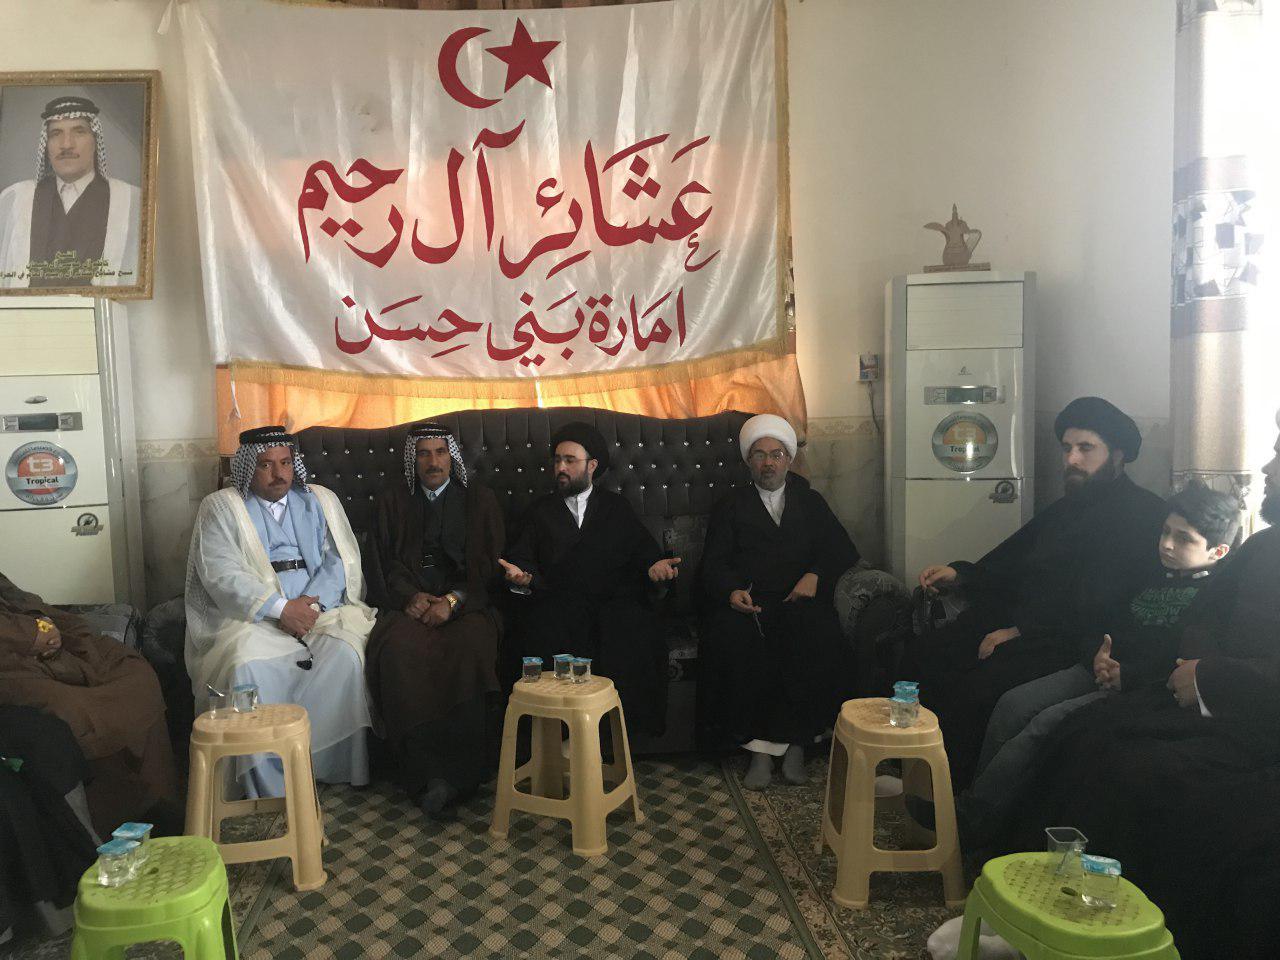 تصویر دیدار هیئتی از دفتر مرجعیت و مجموعه رسانه ای امام حسین علیه السلام، با عشایر عراق